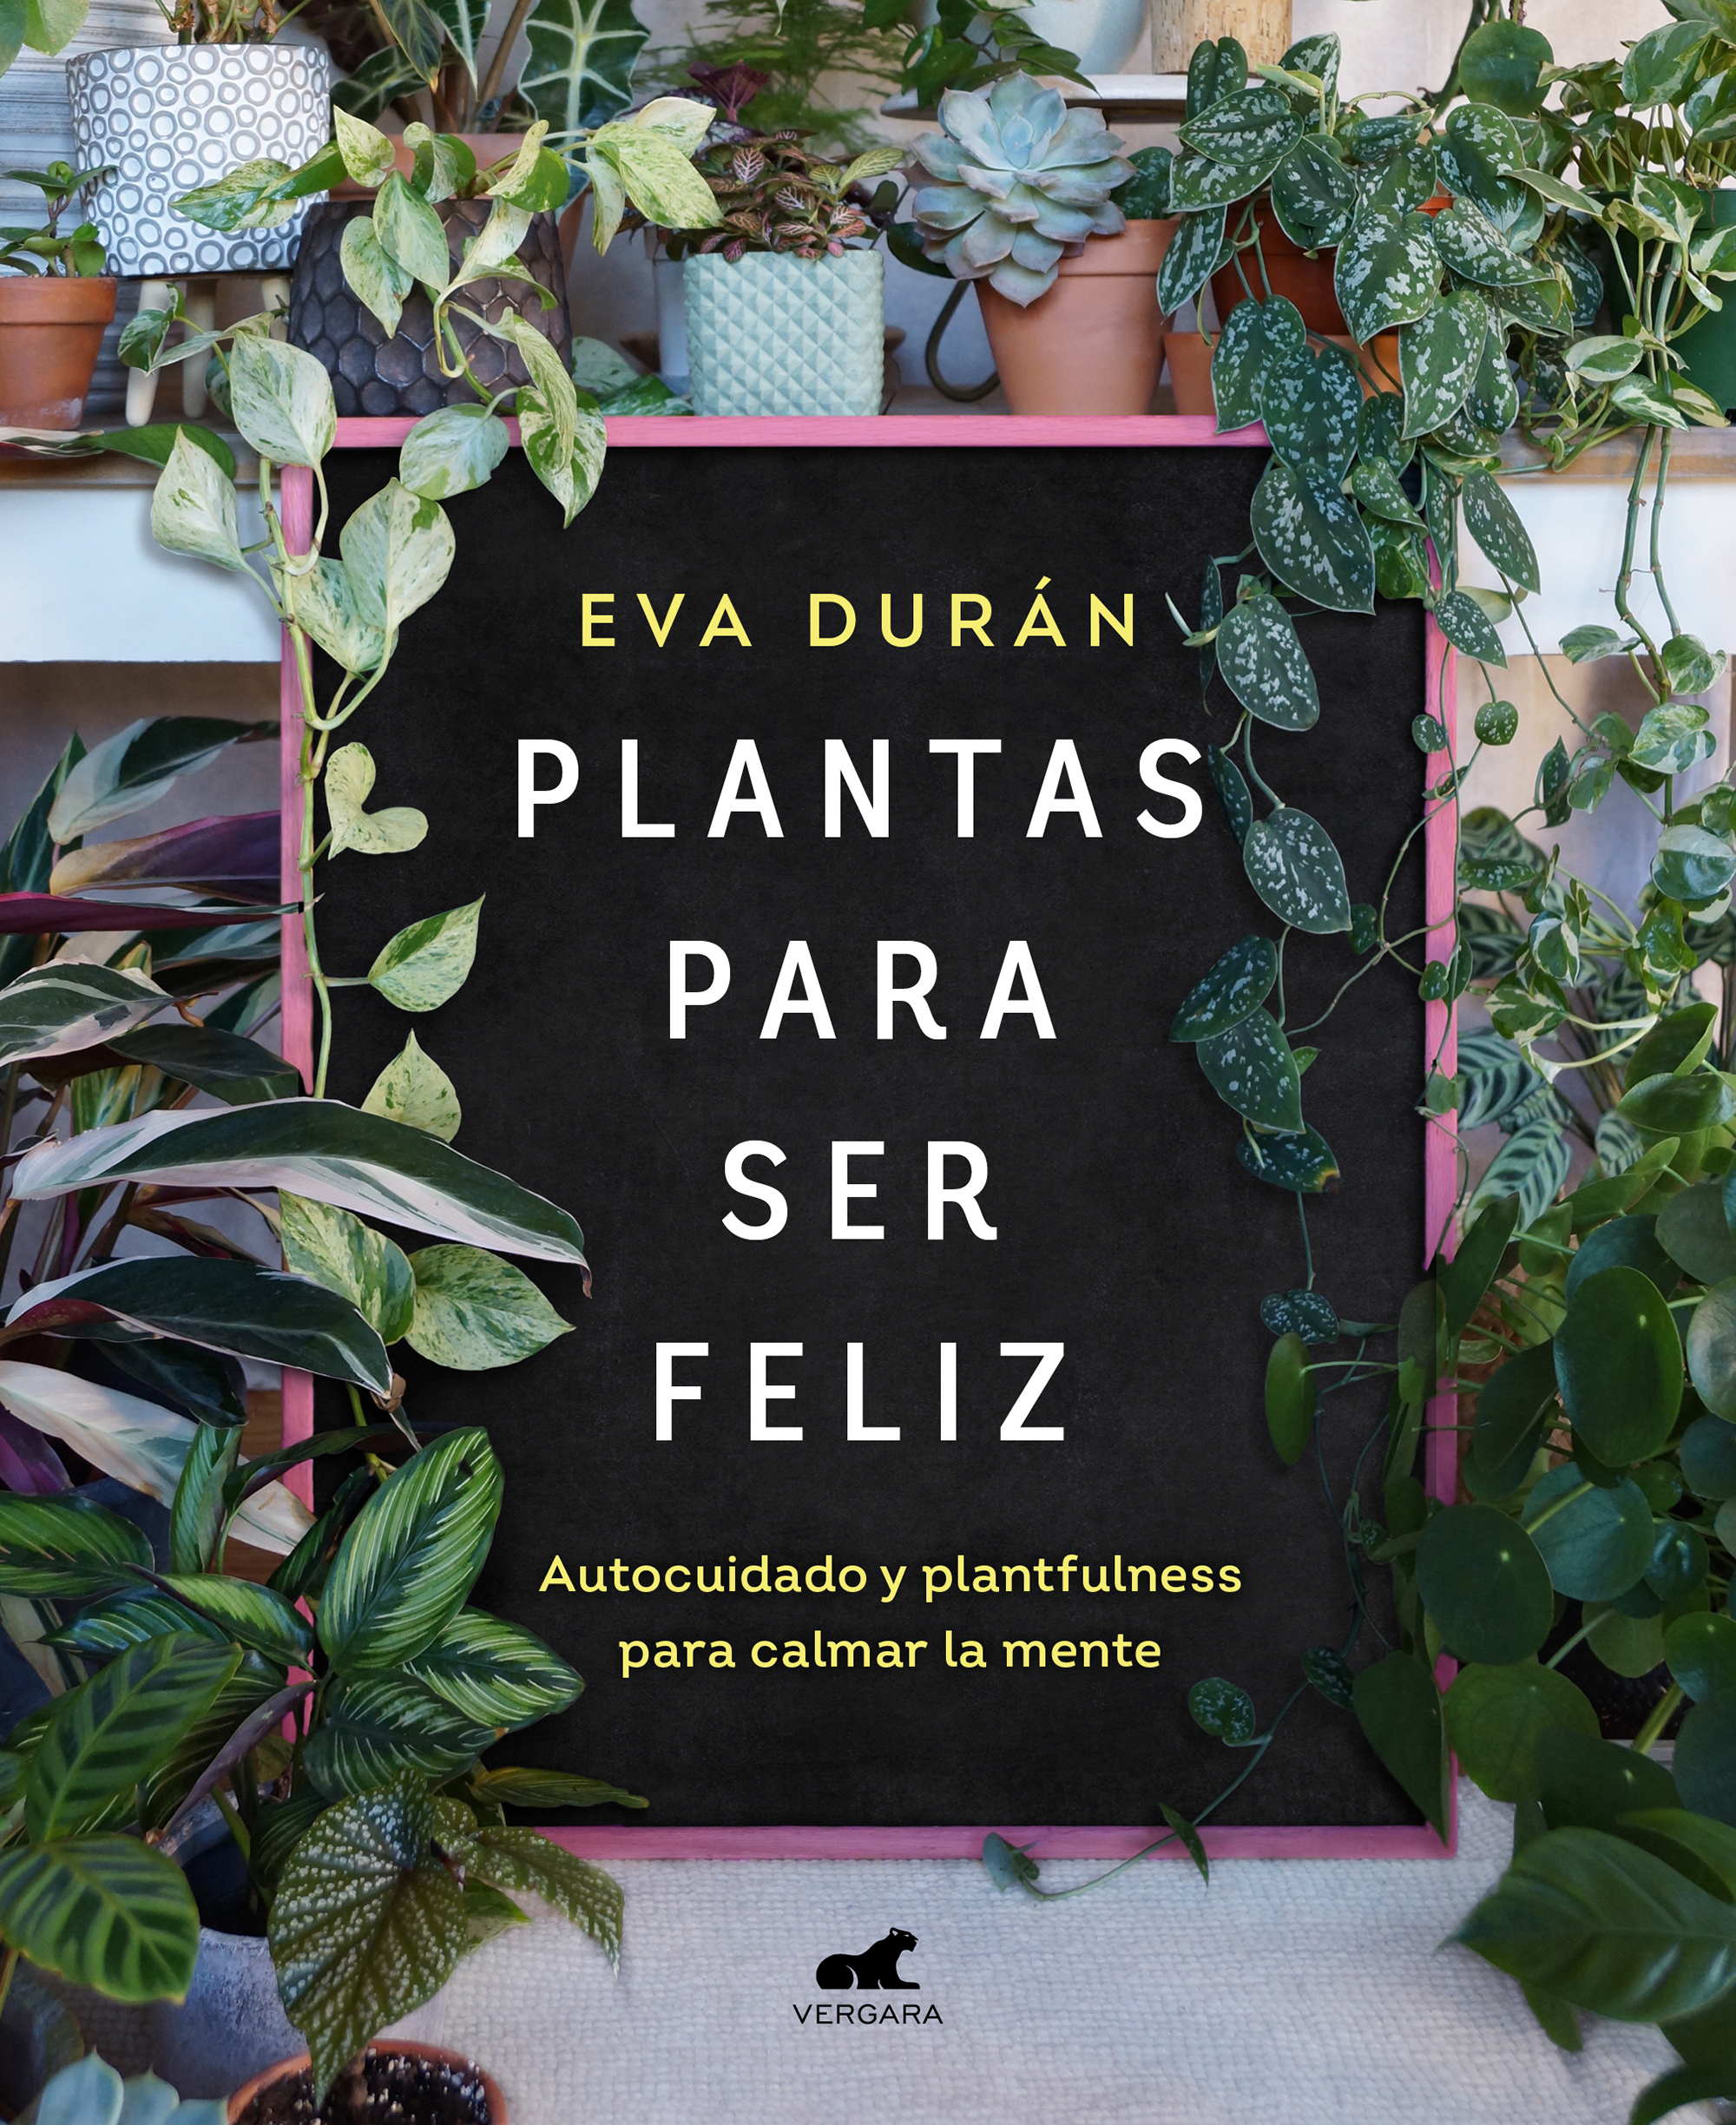 Portada del libro "Plantas para ser feliz" de Eva Durán. Editorial Vergara.